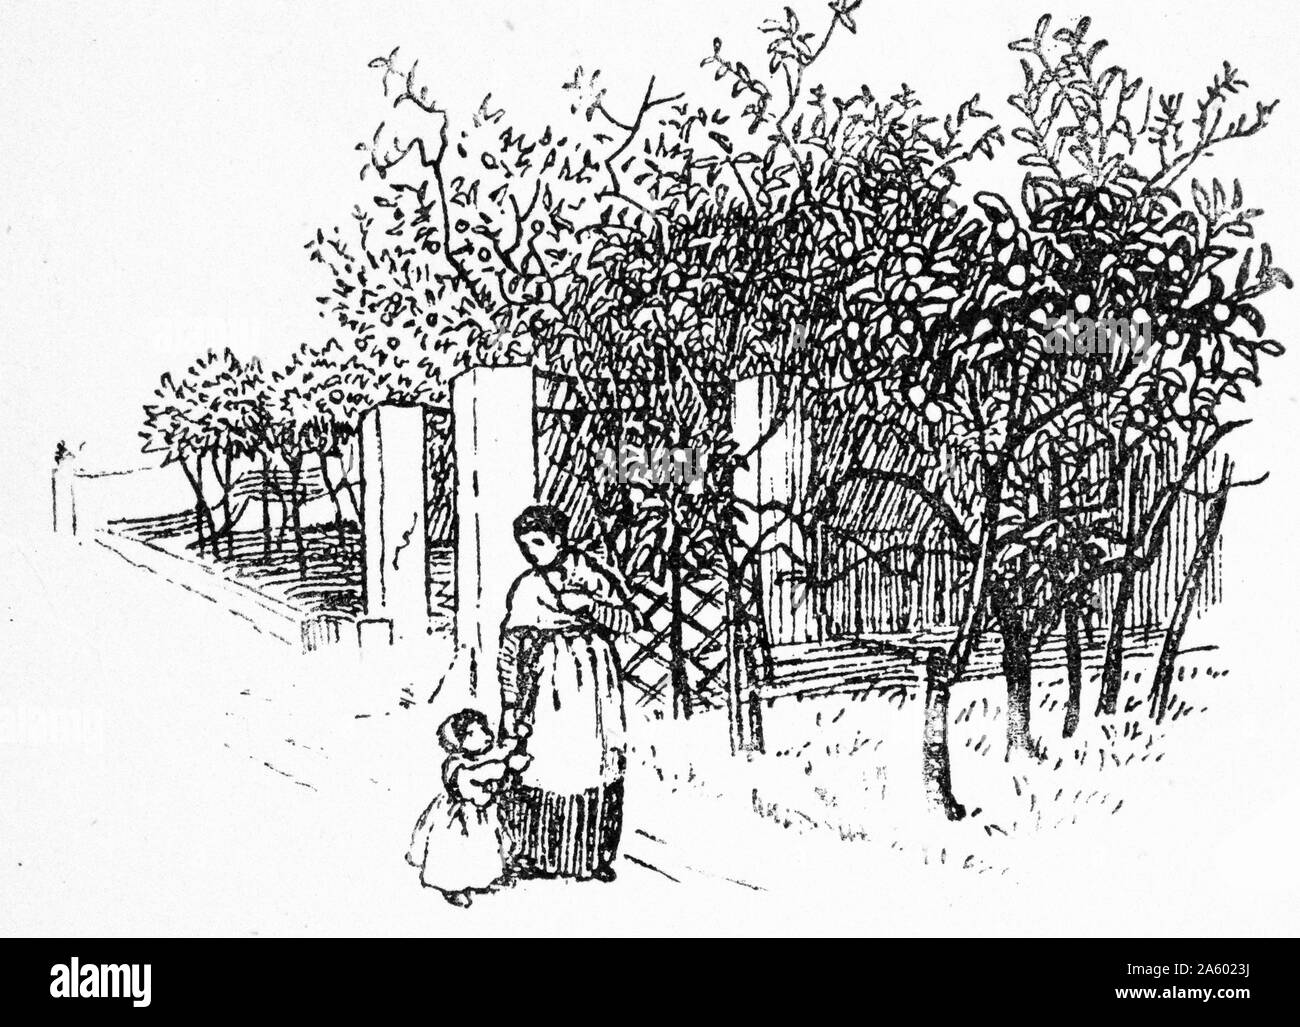 Holzschnitt-Illustration von Mutter und Kind zu Fuß vorbei an einem Feld von landwirtschaftlichen Gütern und Apfelbäume. Vom Jahre 1877 Stockfoto